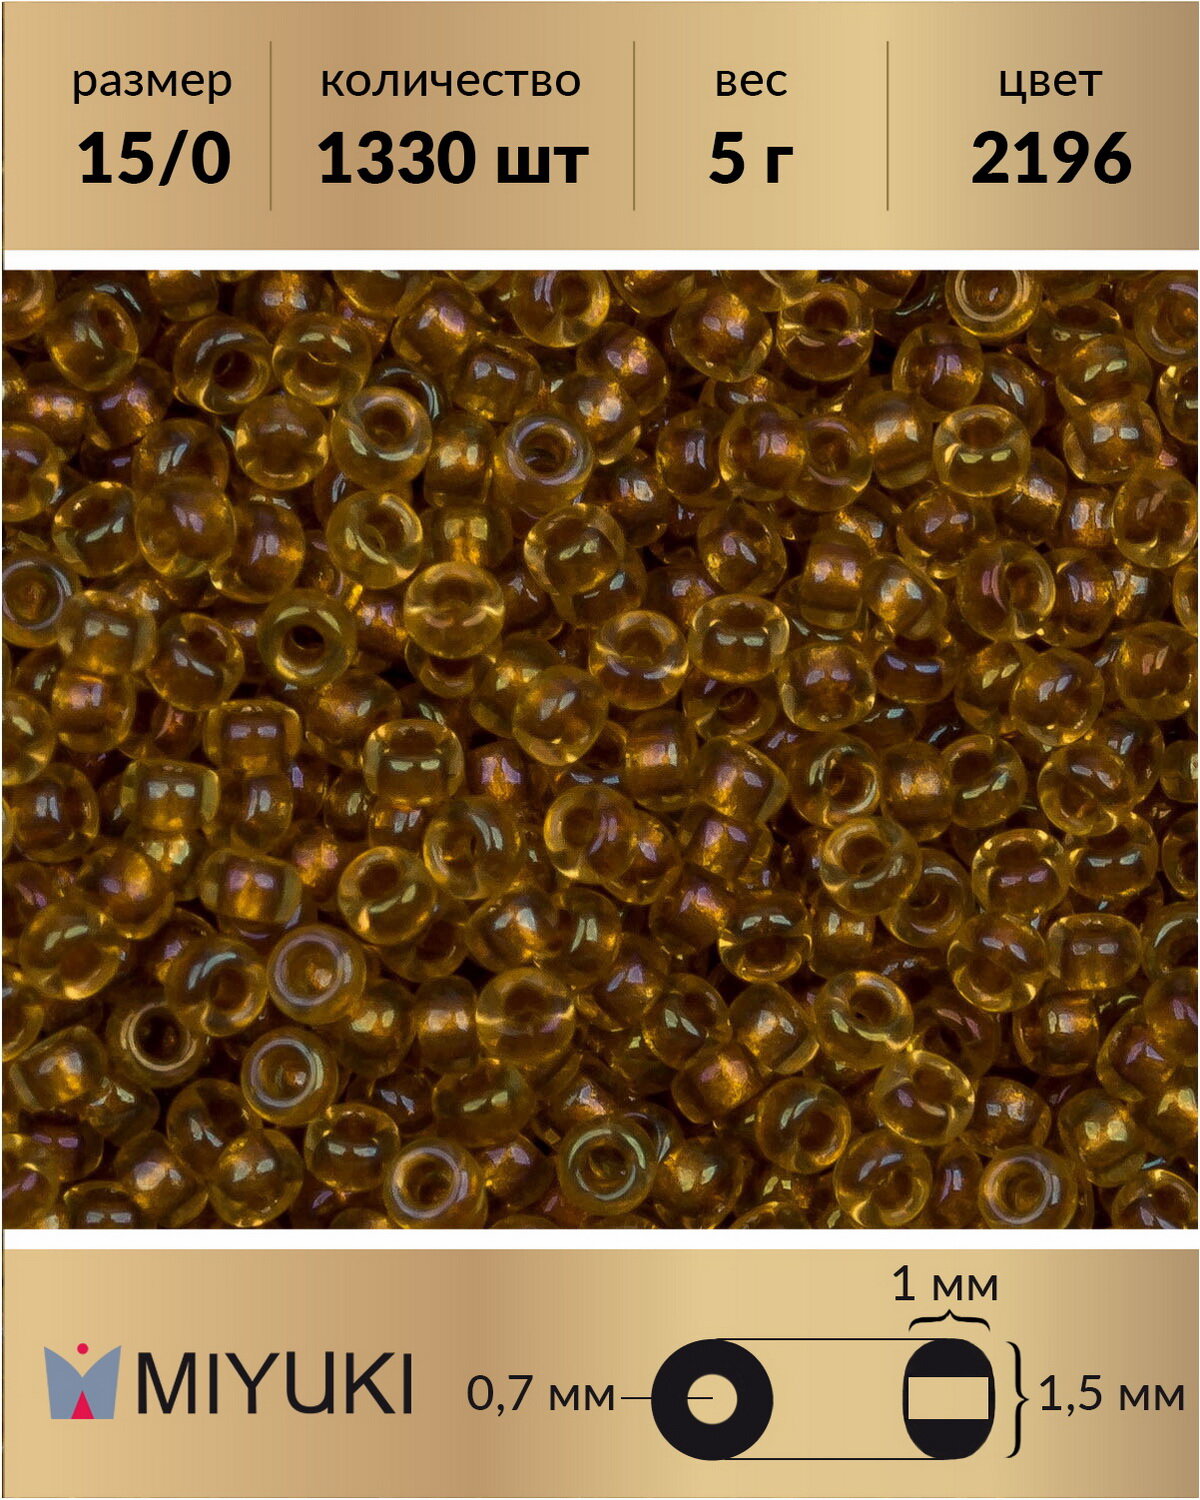 Японский бисер Miyuki, размер 15/0, цвет: Окрашенный изнутри топаз/радужный хрусталь (2196), 5 грамм